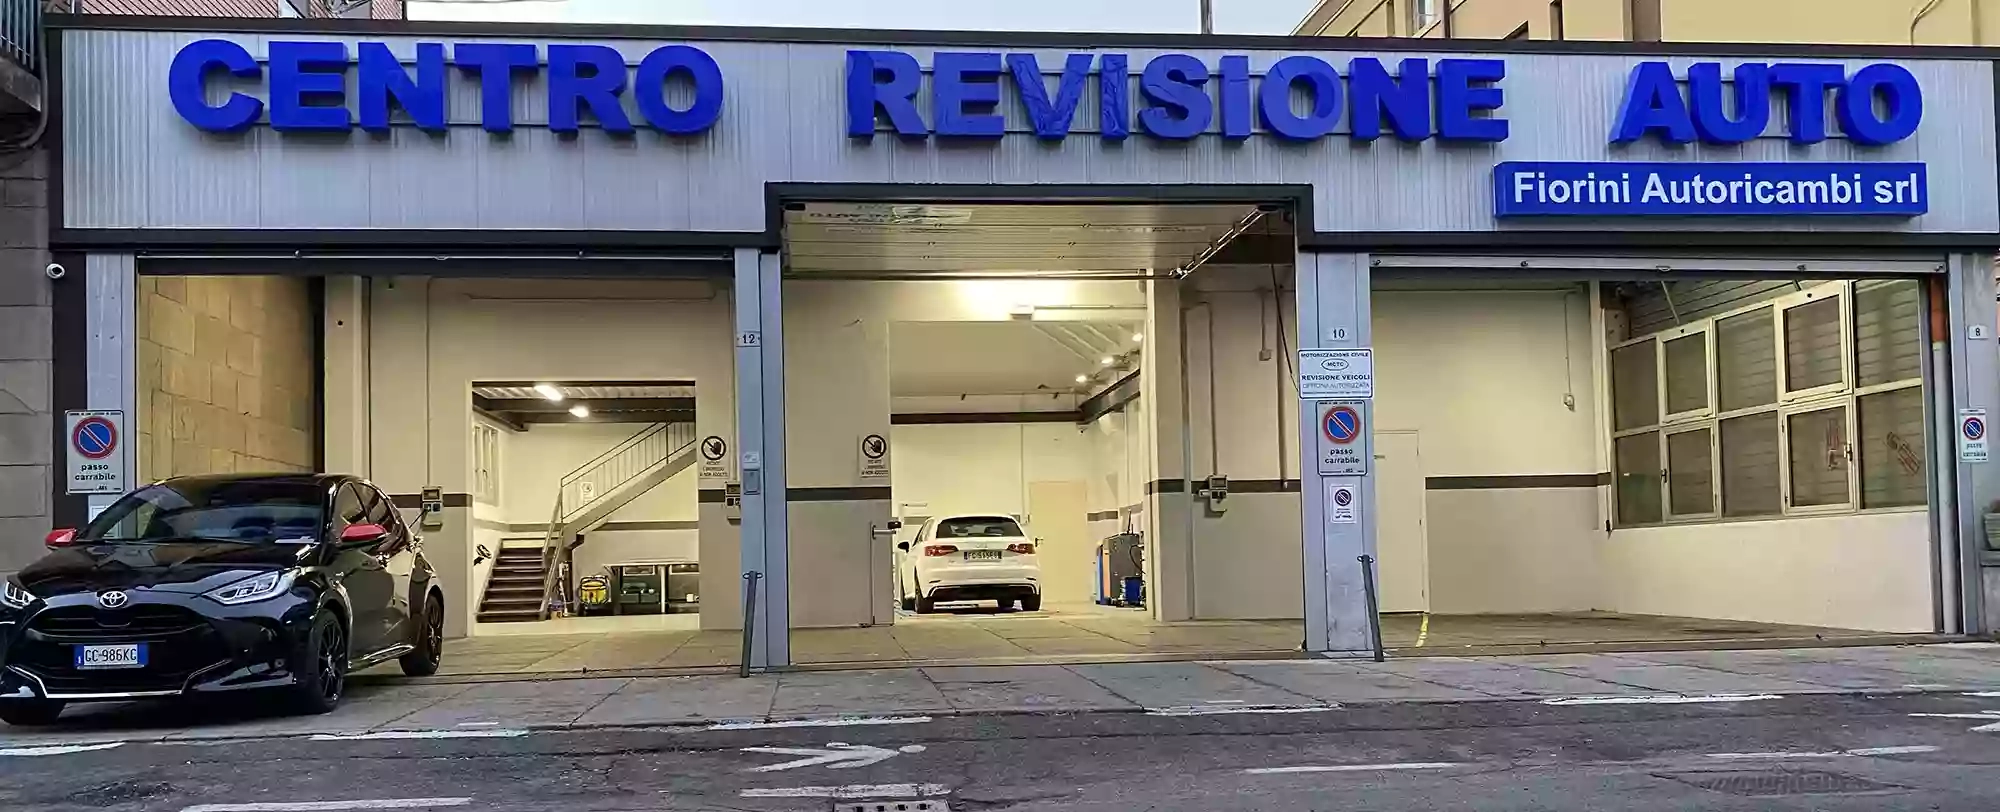 Centro Revisioni Fiorini Autoricambi - Auto e Moto